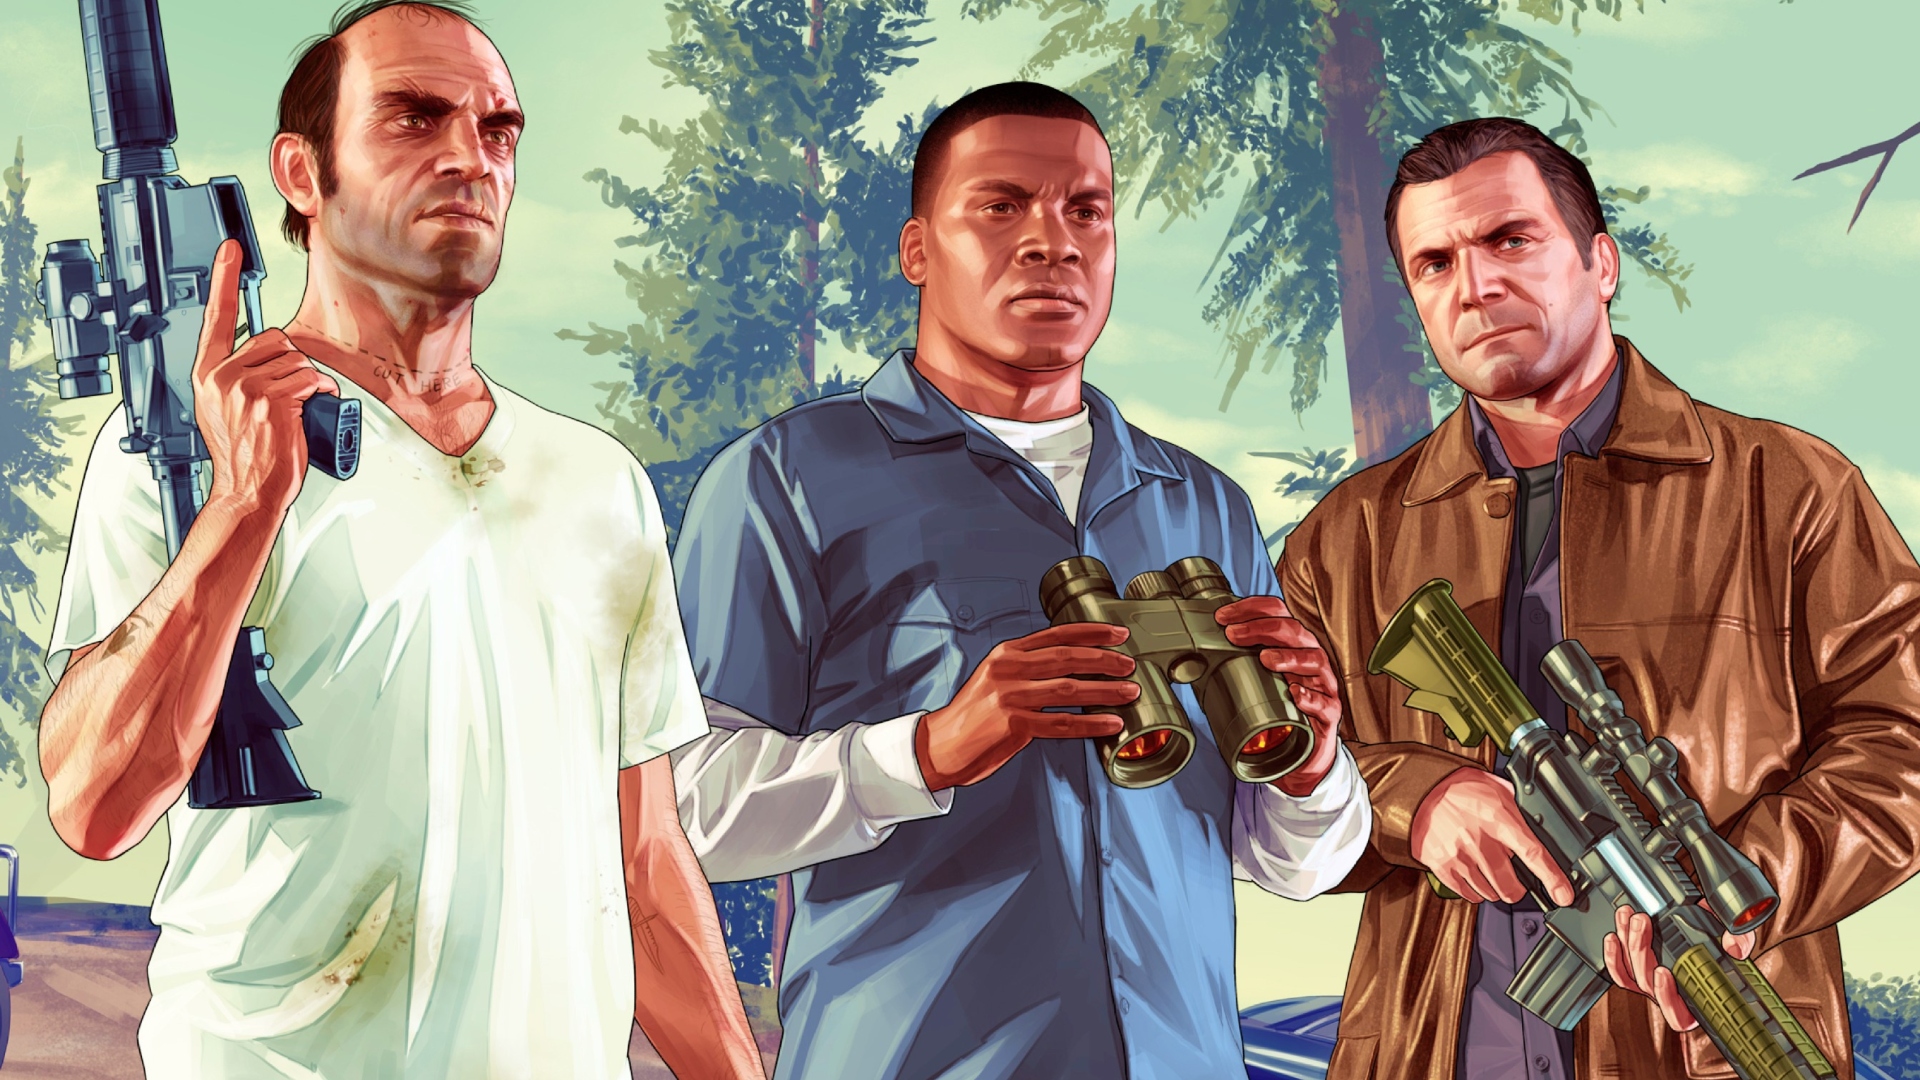 GTA Online: San Andreas Mercenaries Coming June 13 